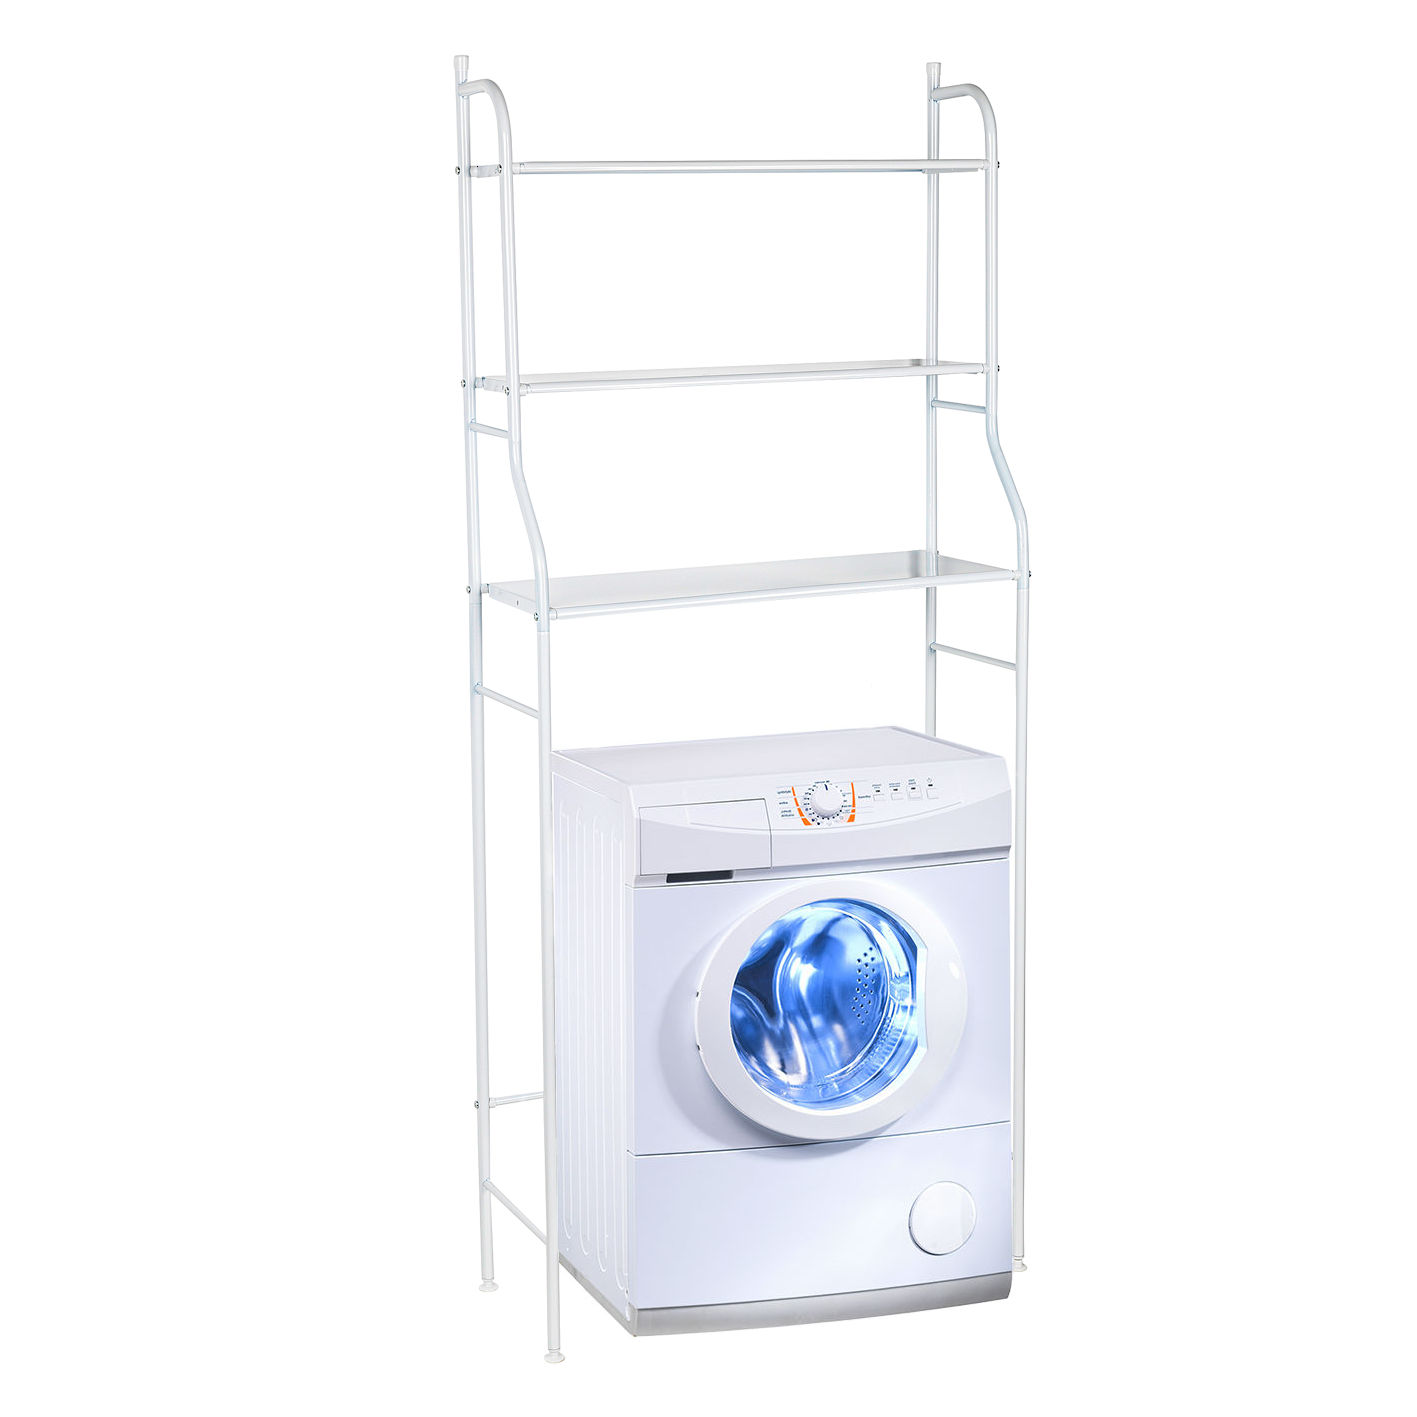 Waschmaschinenregal mit 3 Regalfächern - 155 x 68 cm - Überbau Standregal aus Metall in weiß